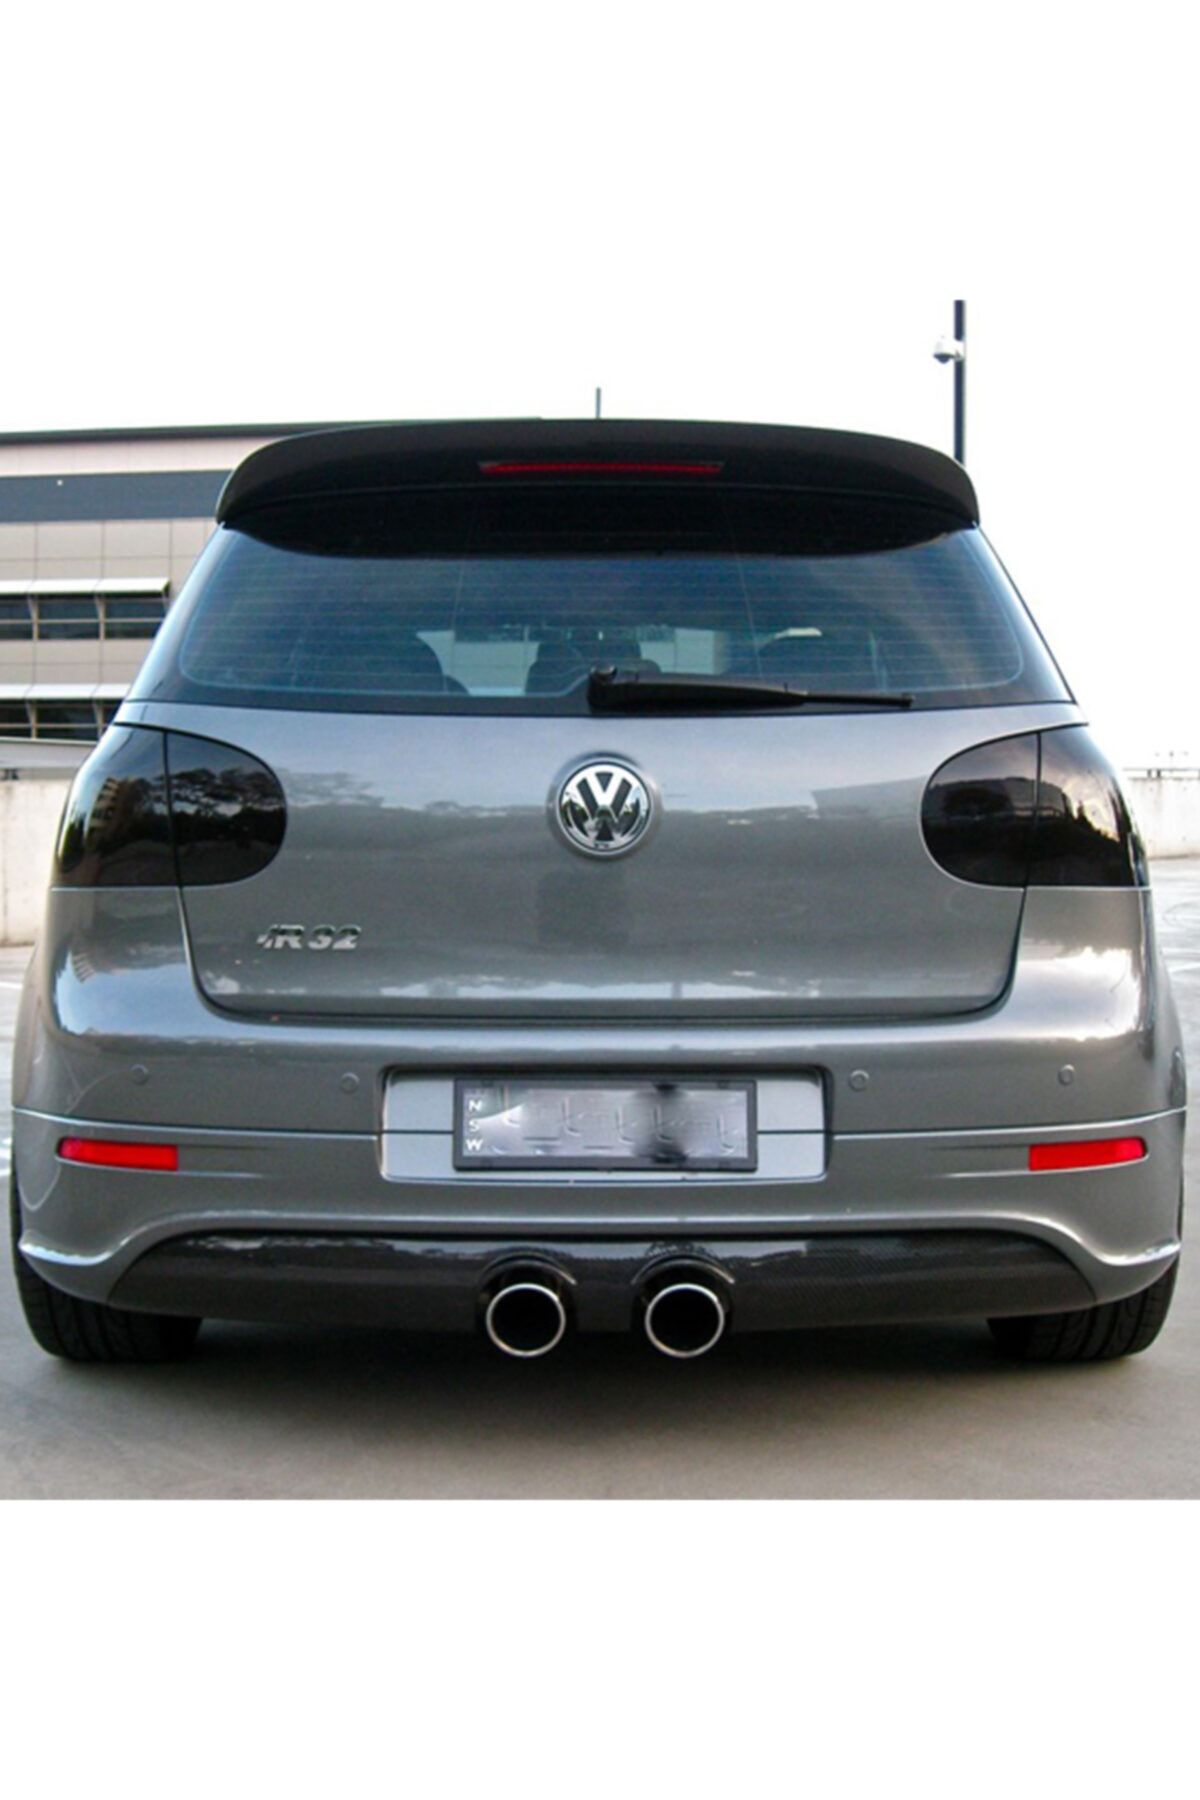 DNA Volkswagen Golf 5 R32 Arka Ek (plastik) Fiyatı, Yorumları - Trendyol